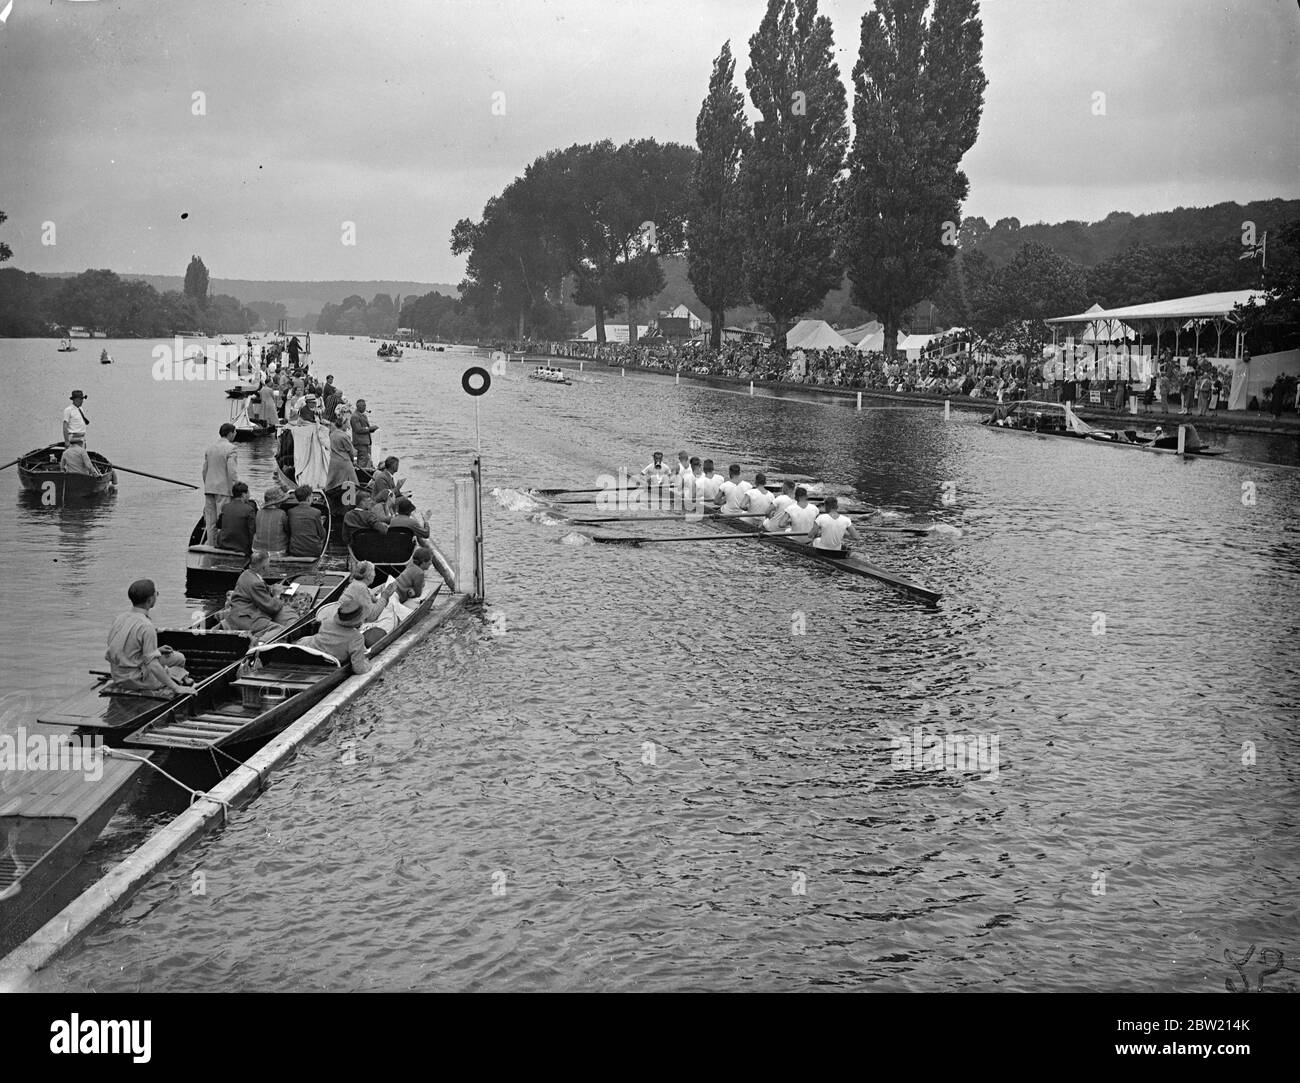 L'equipaggio tedesco Rudergesellschaft Wiking finendo Heat 3 della Grand Challenge Cup molte lunghezze davanti al New College, Oxford alla Henley Royal Regatta, il secondo giorno. 1 luglio 1937 Foto Stock